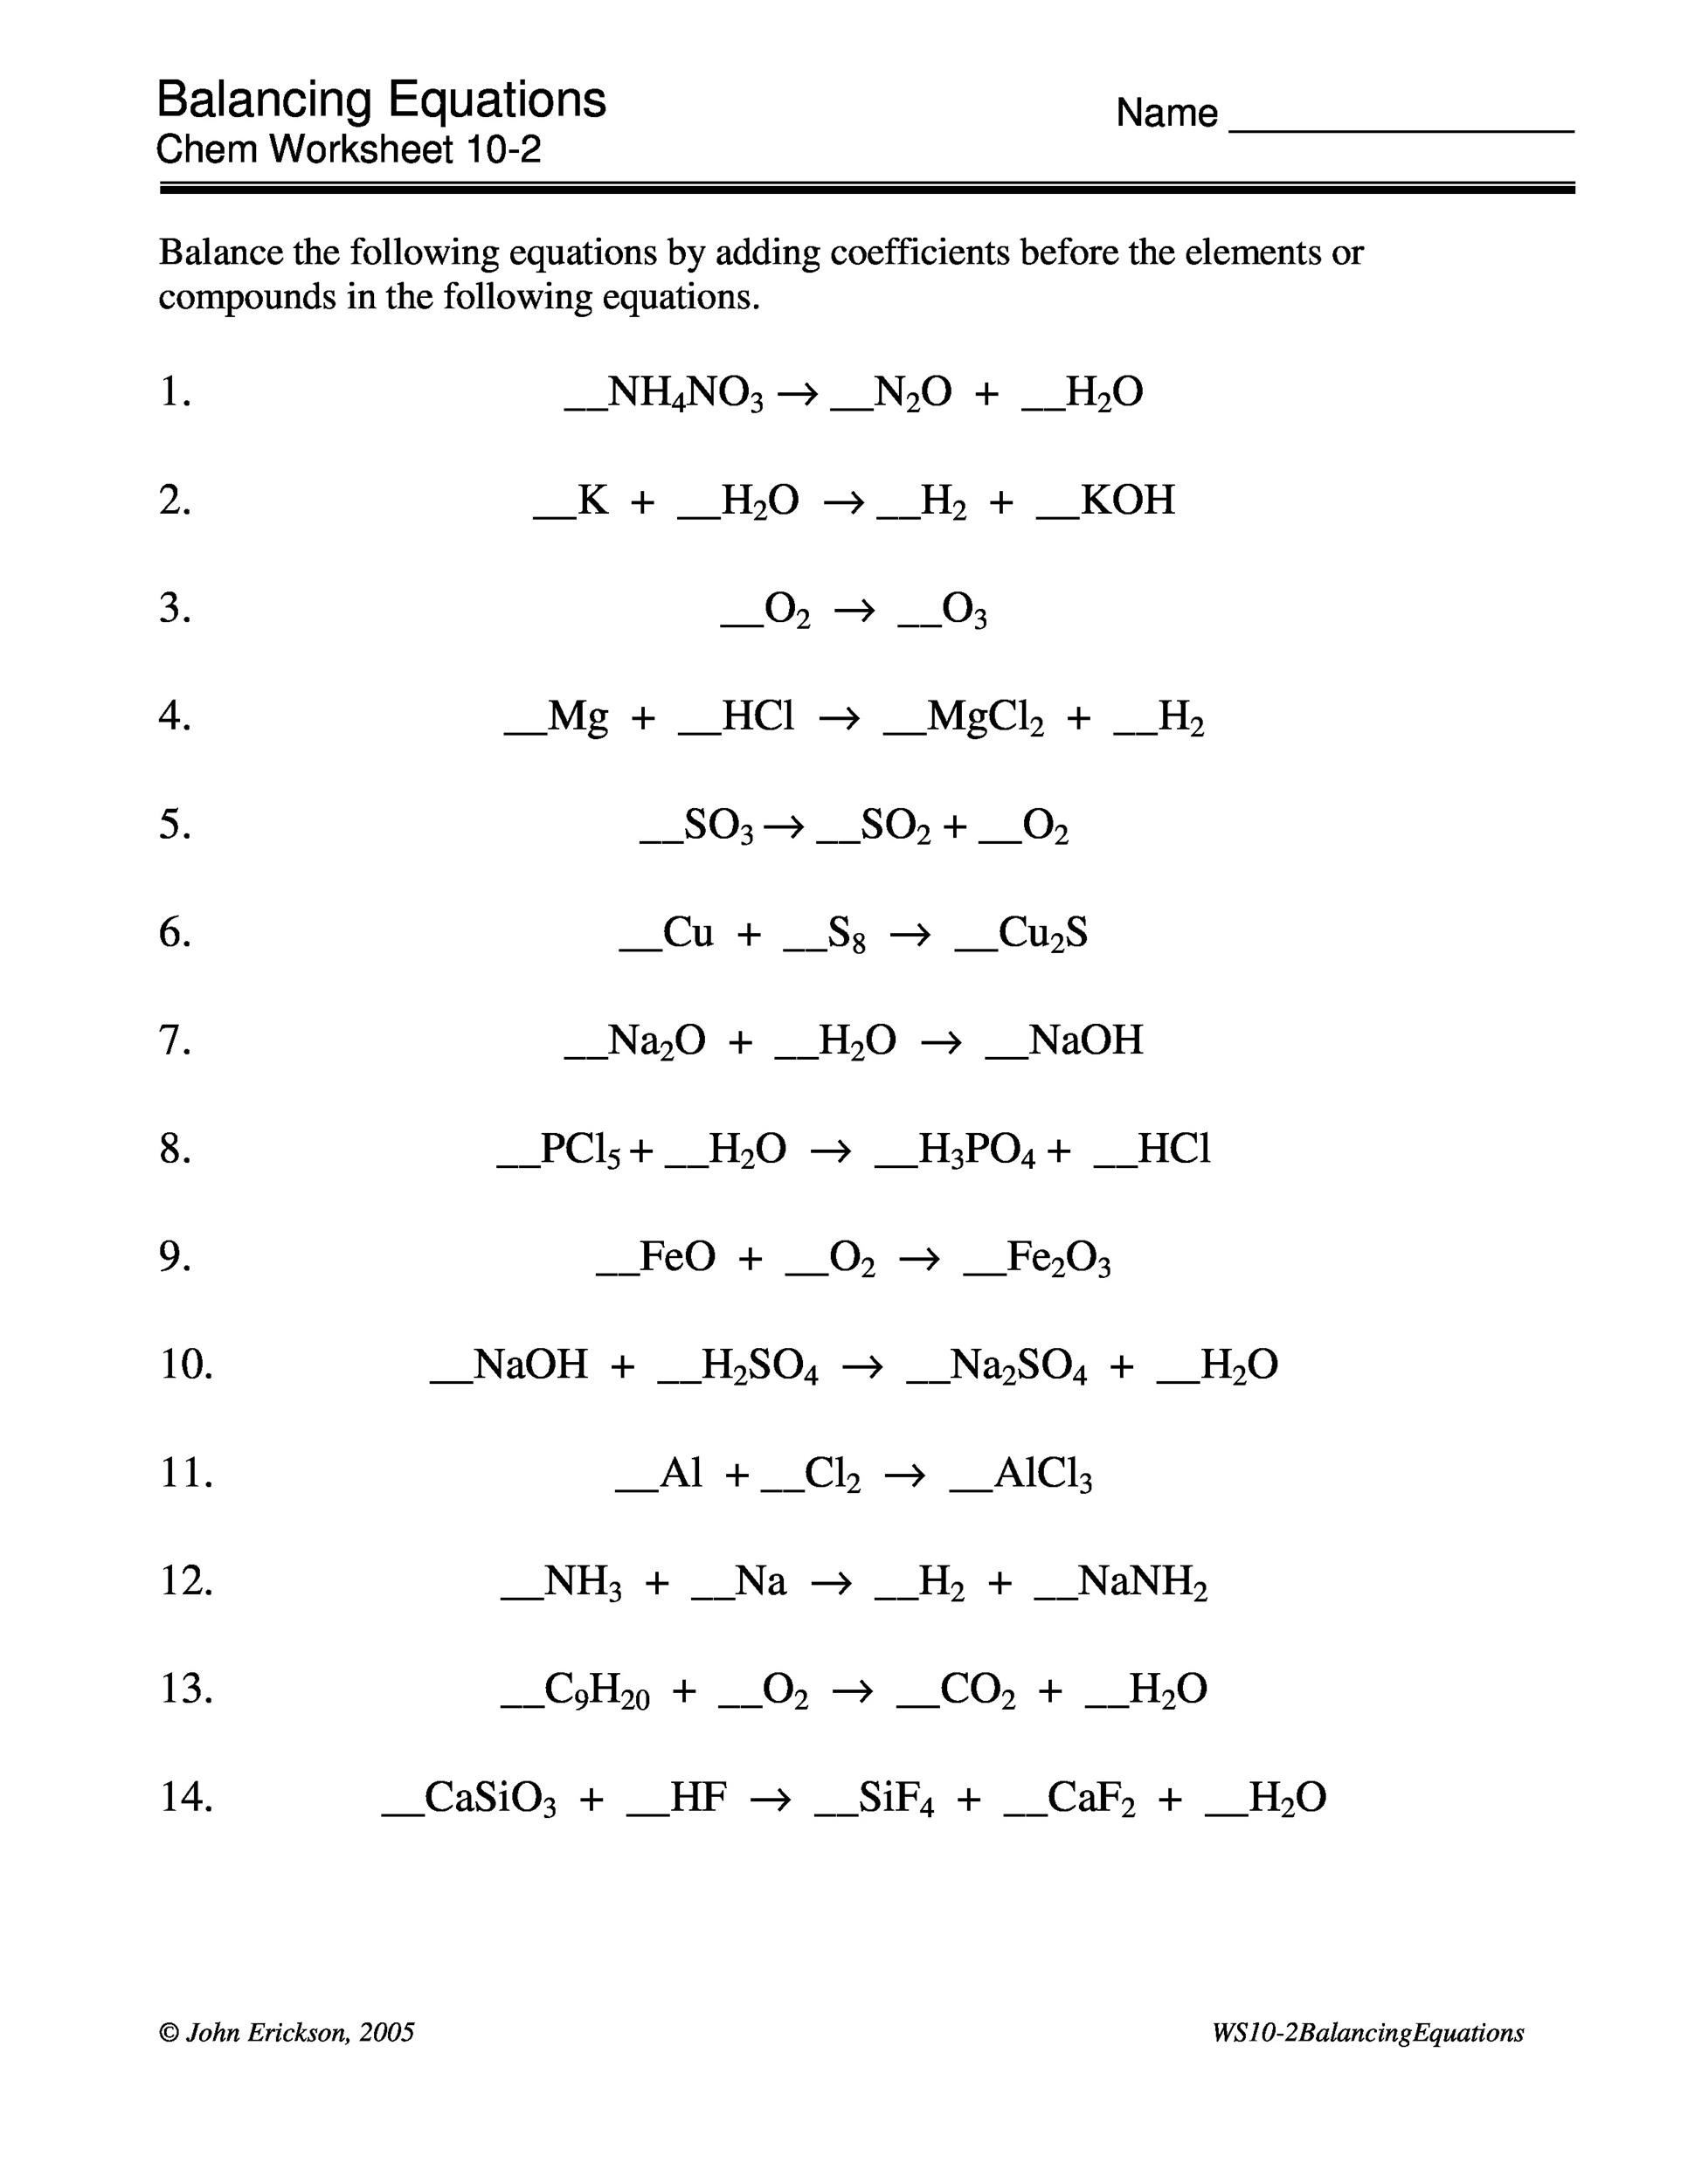 Free balancing equations 42